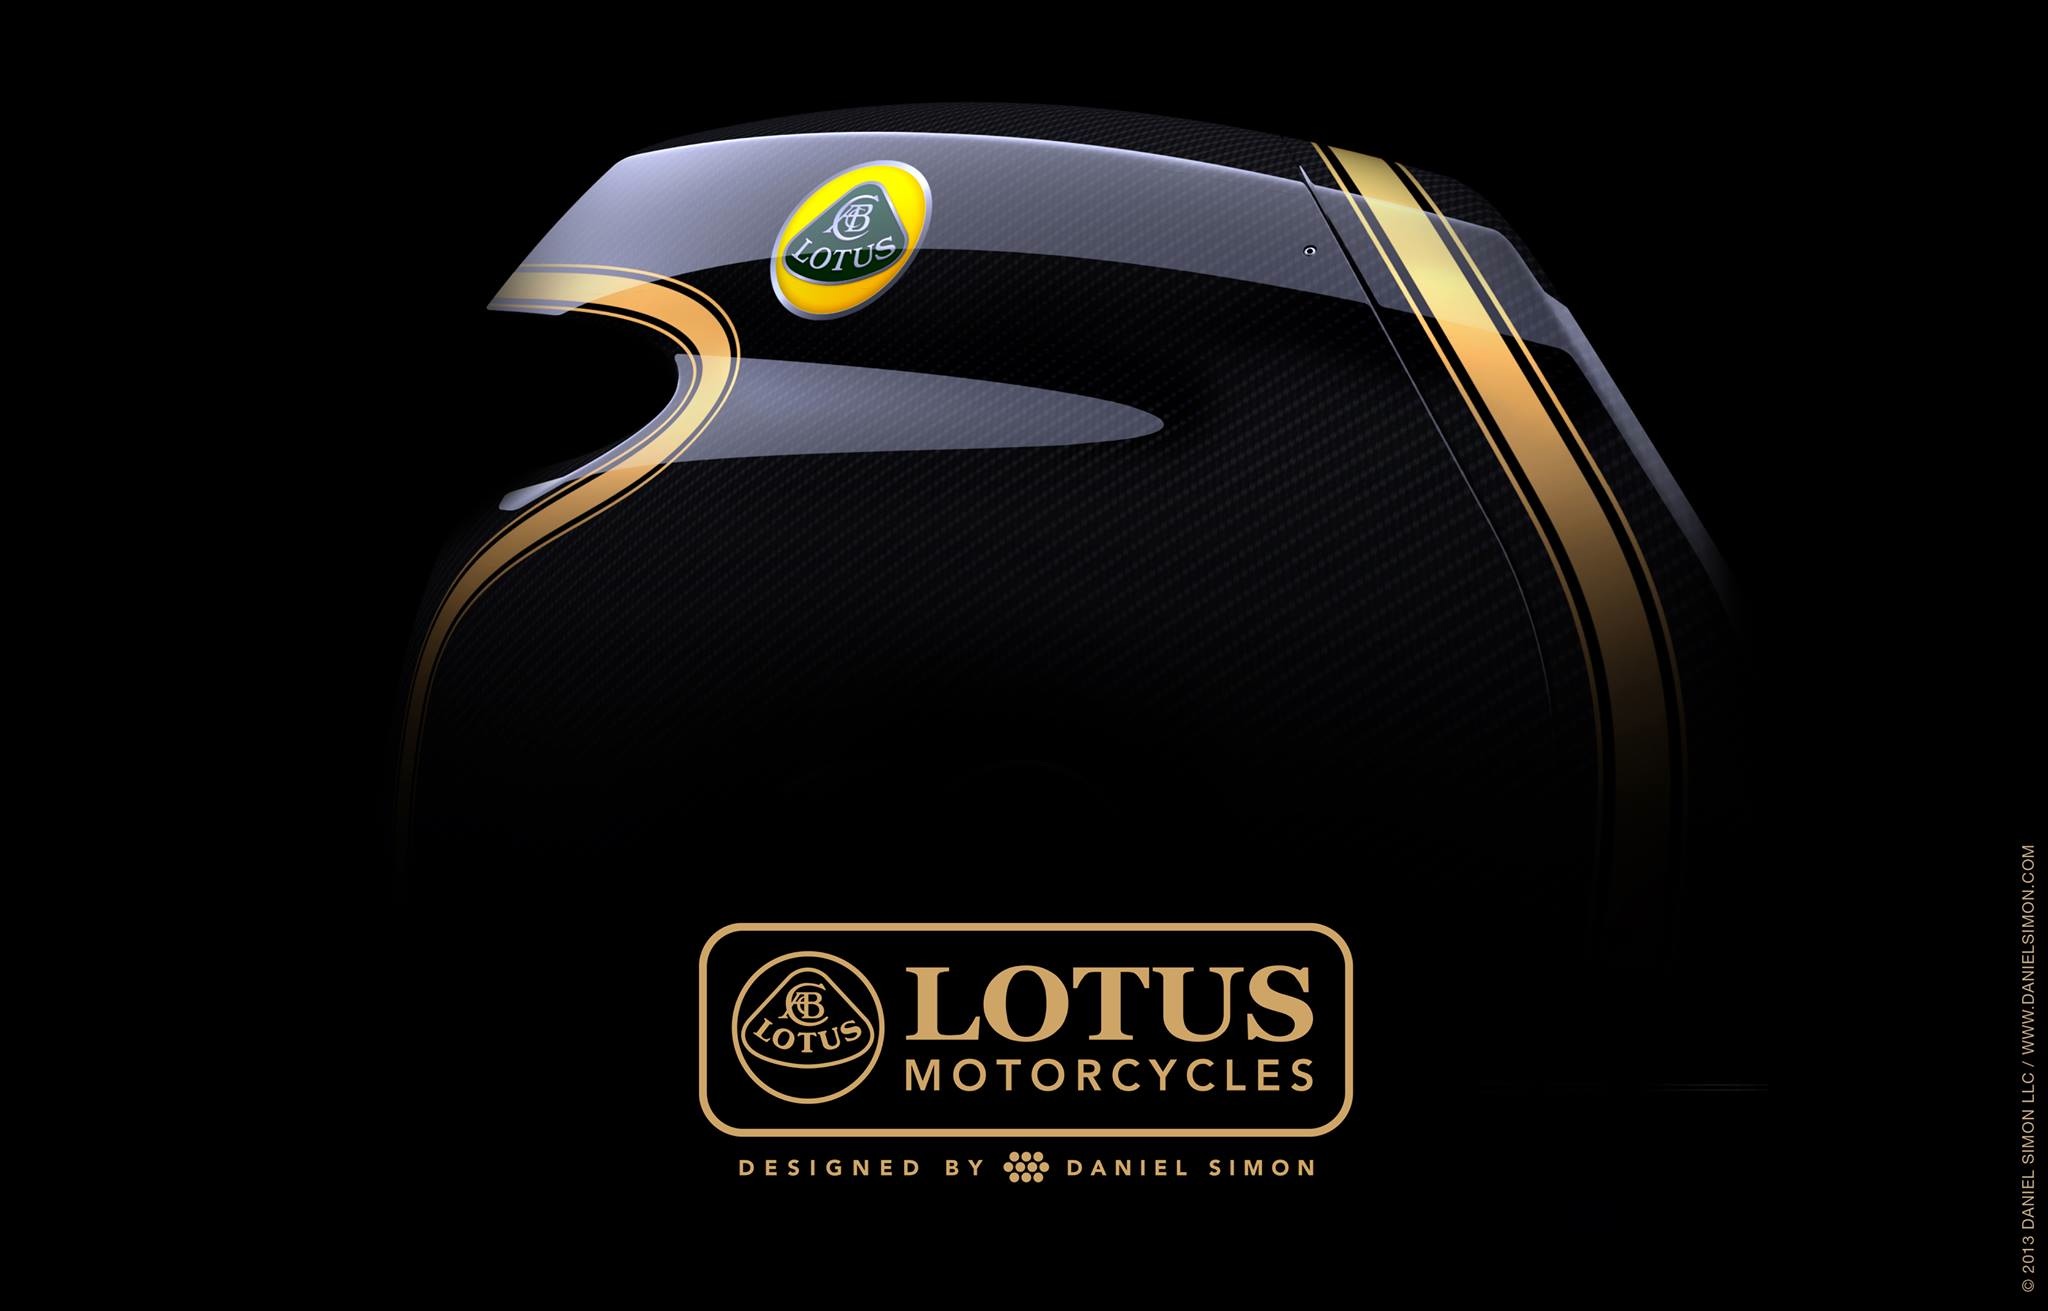 Lotus motorcycles